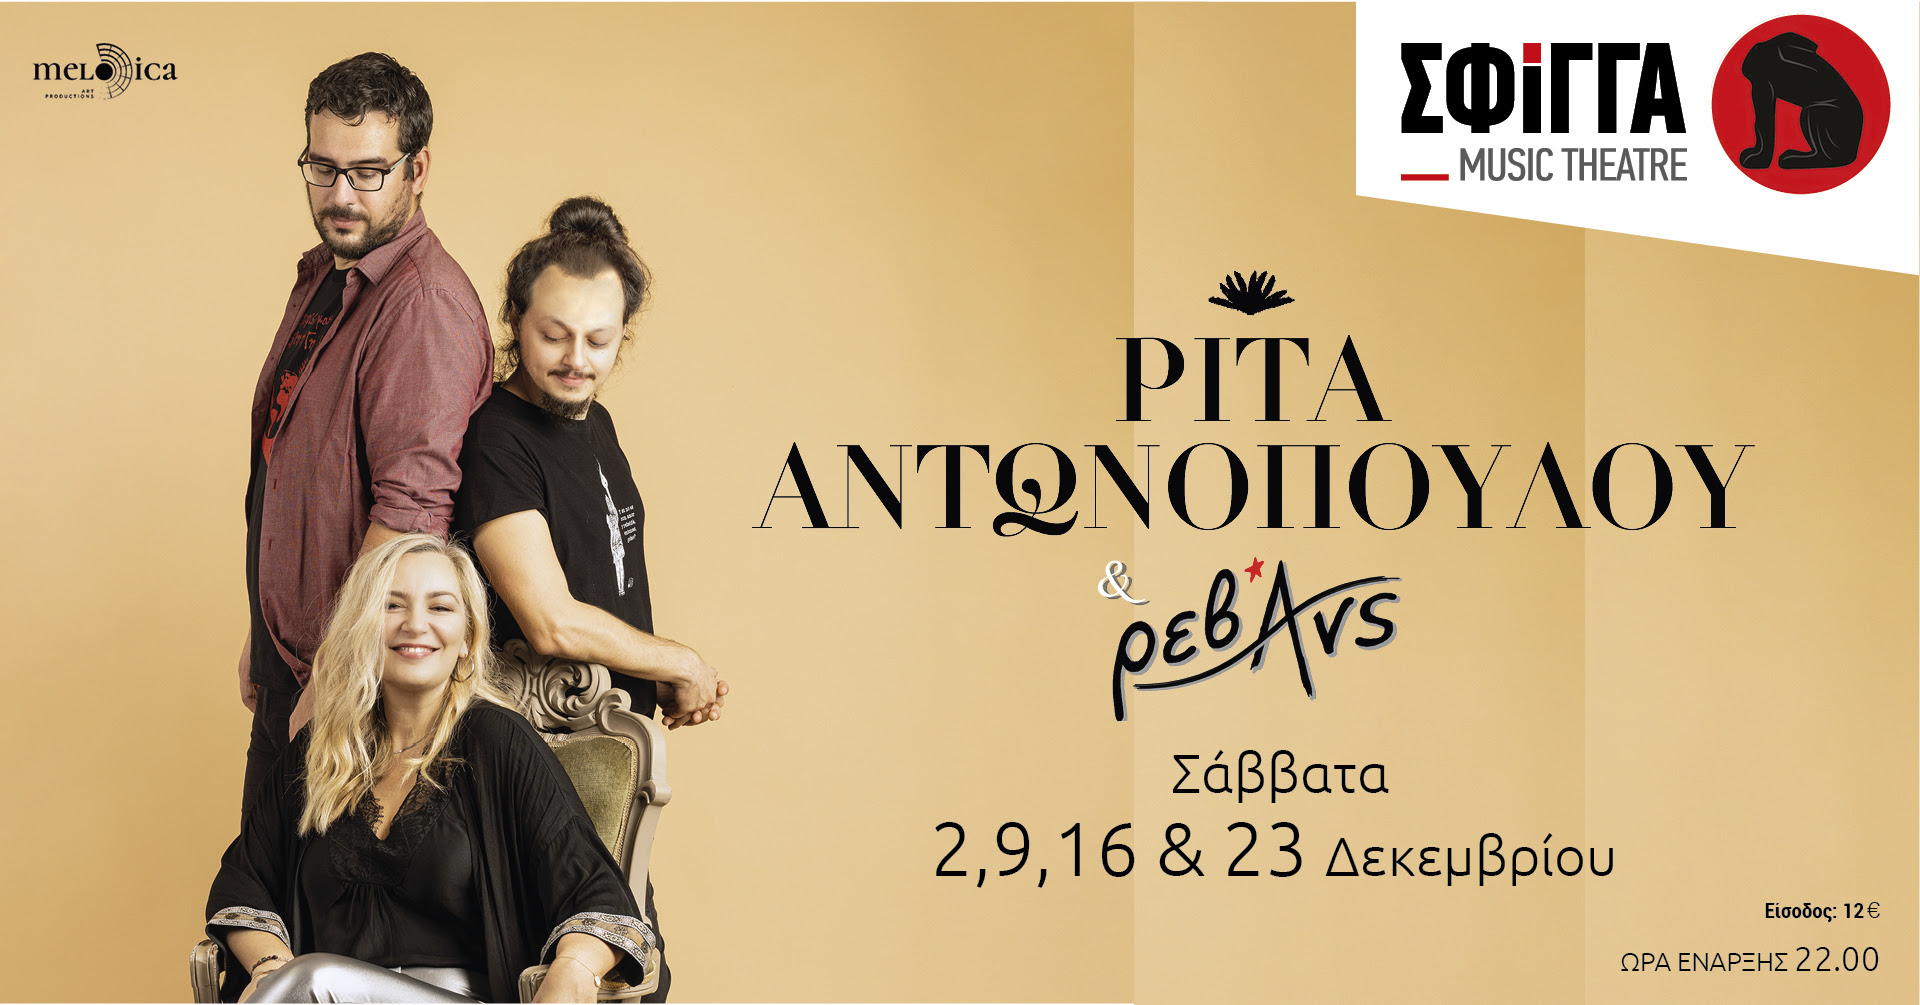 Ρίτα Αντωνοπούλου & Ρεβάνς στη Σφίγγα τα Σάββατα 2, 9, 16, 23 Δεκεμβρίου